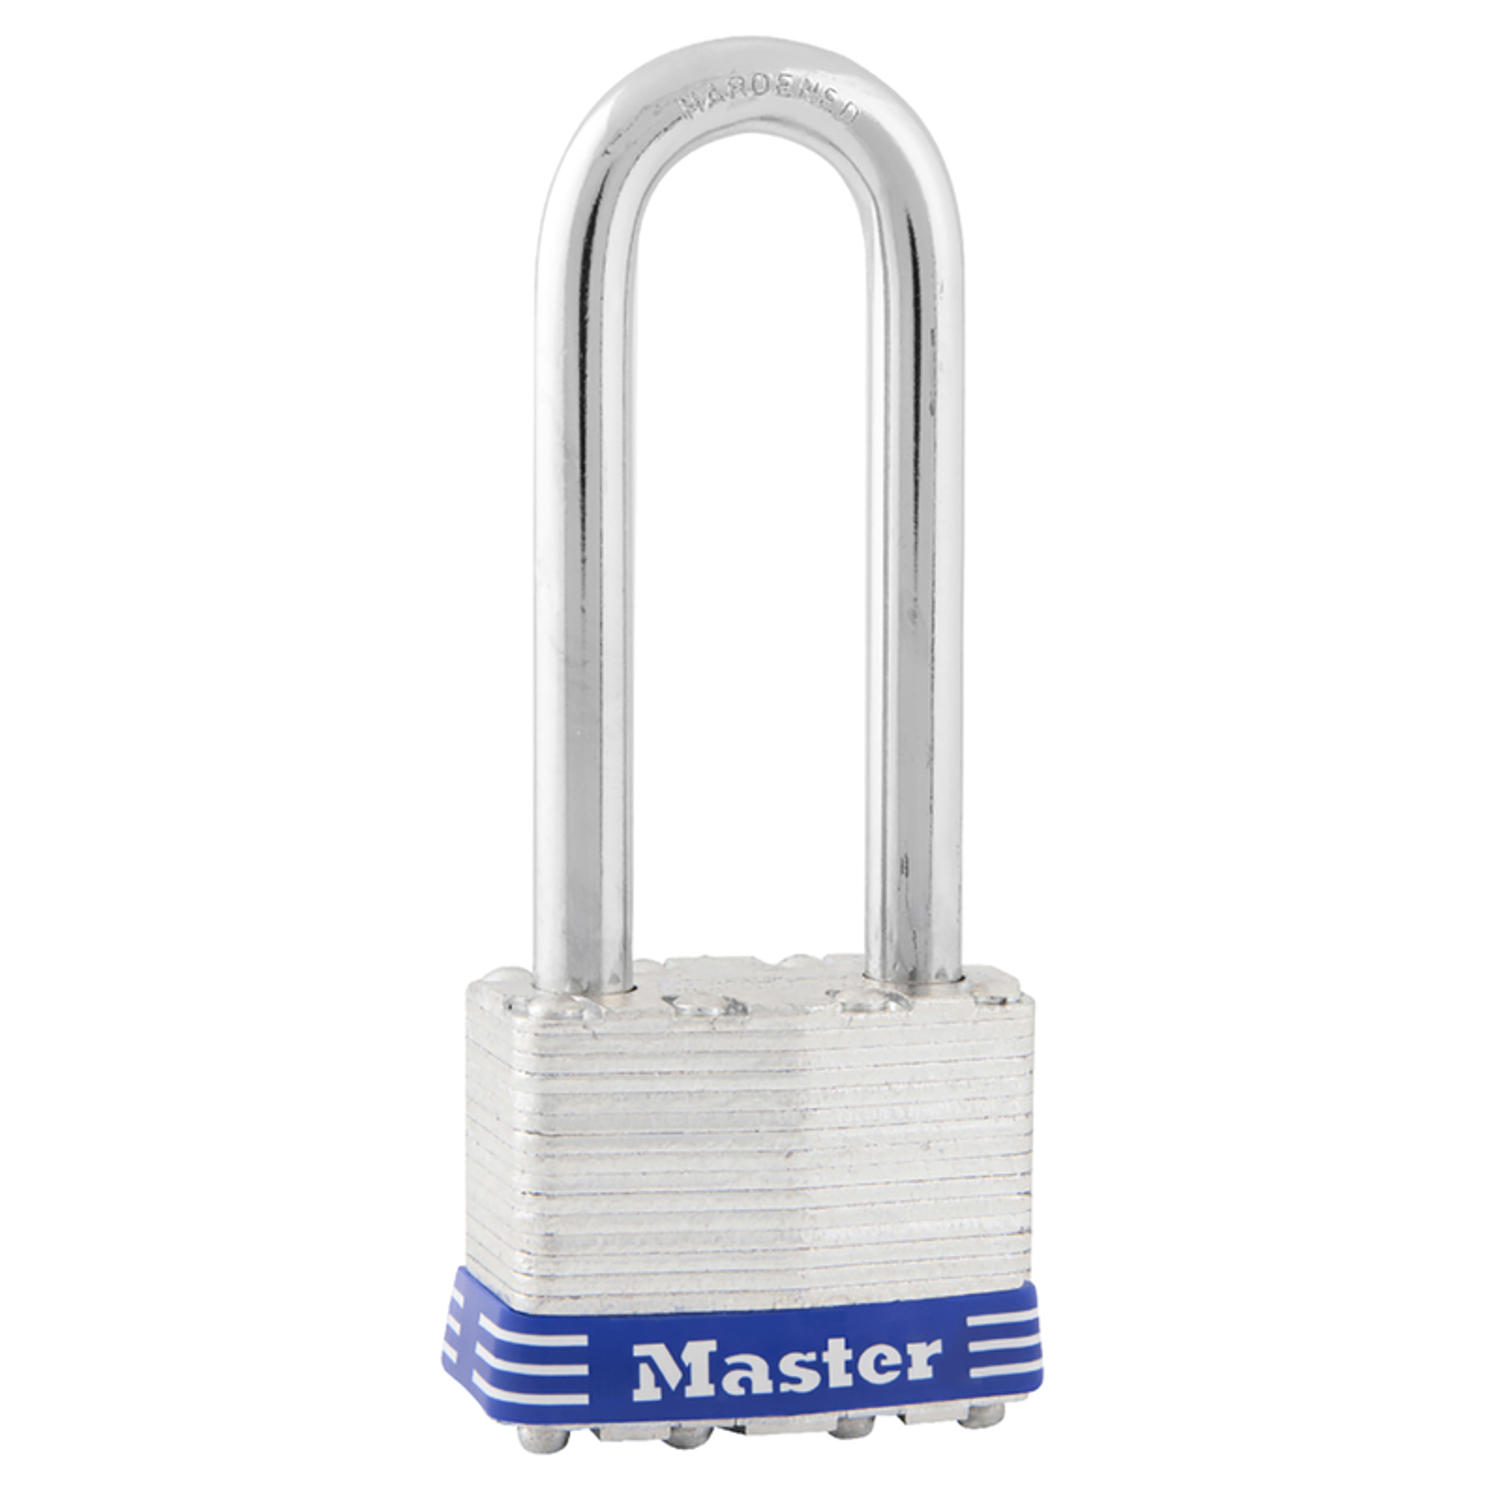 Master Lock 1-3/4 in. W Laminated Steel Ball Bearing Locking Padlock